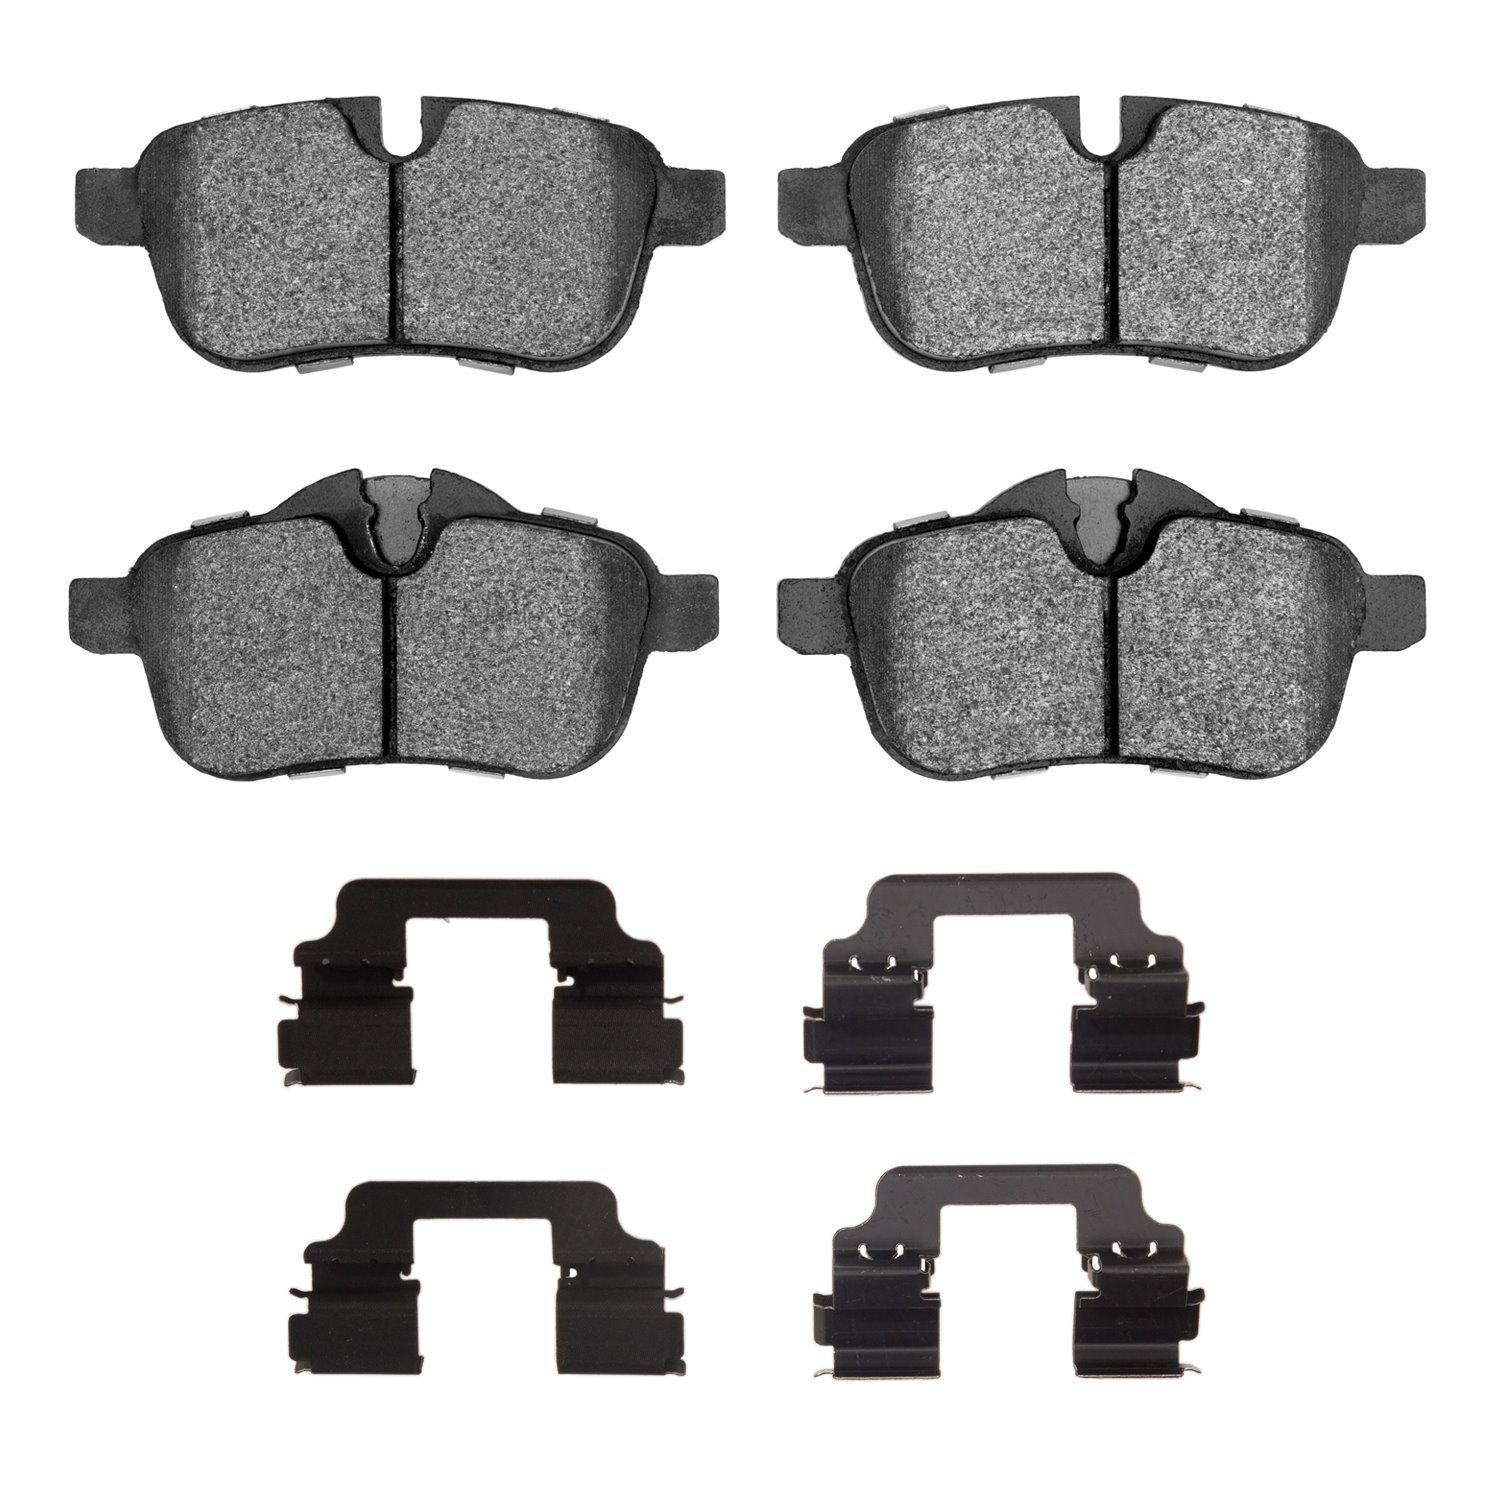 Euro Ceramic Brake Pads & Hardware Kit, 2009-2016 BMW, Position: Rear